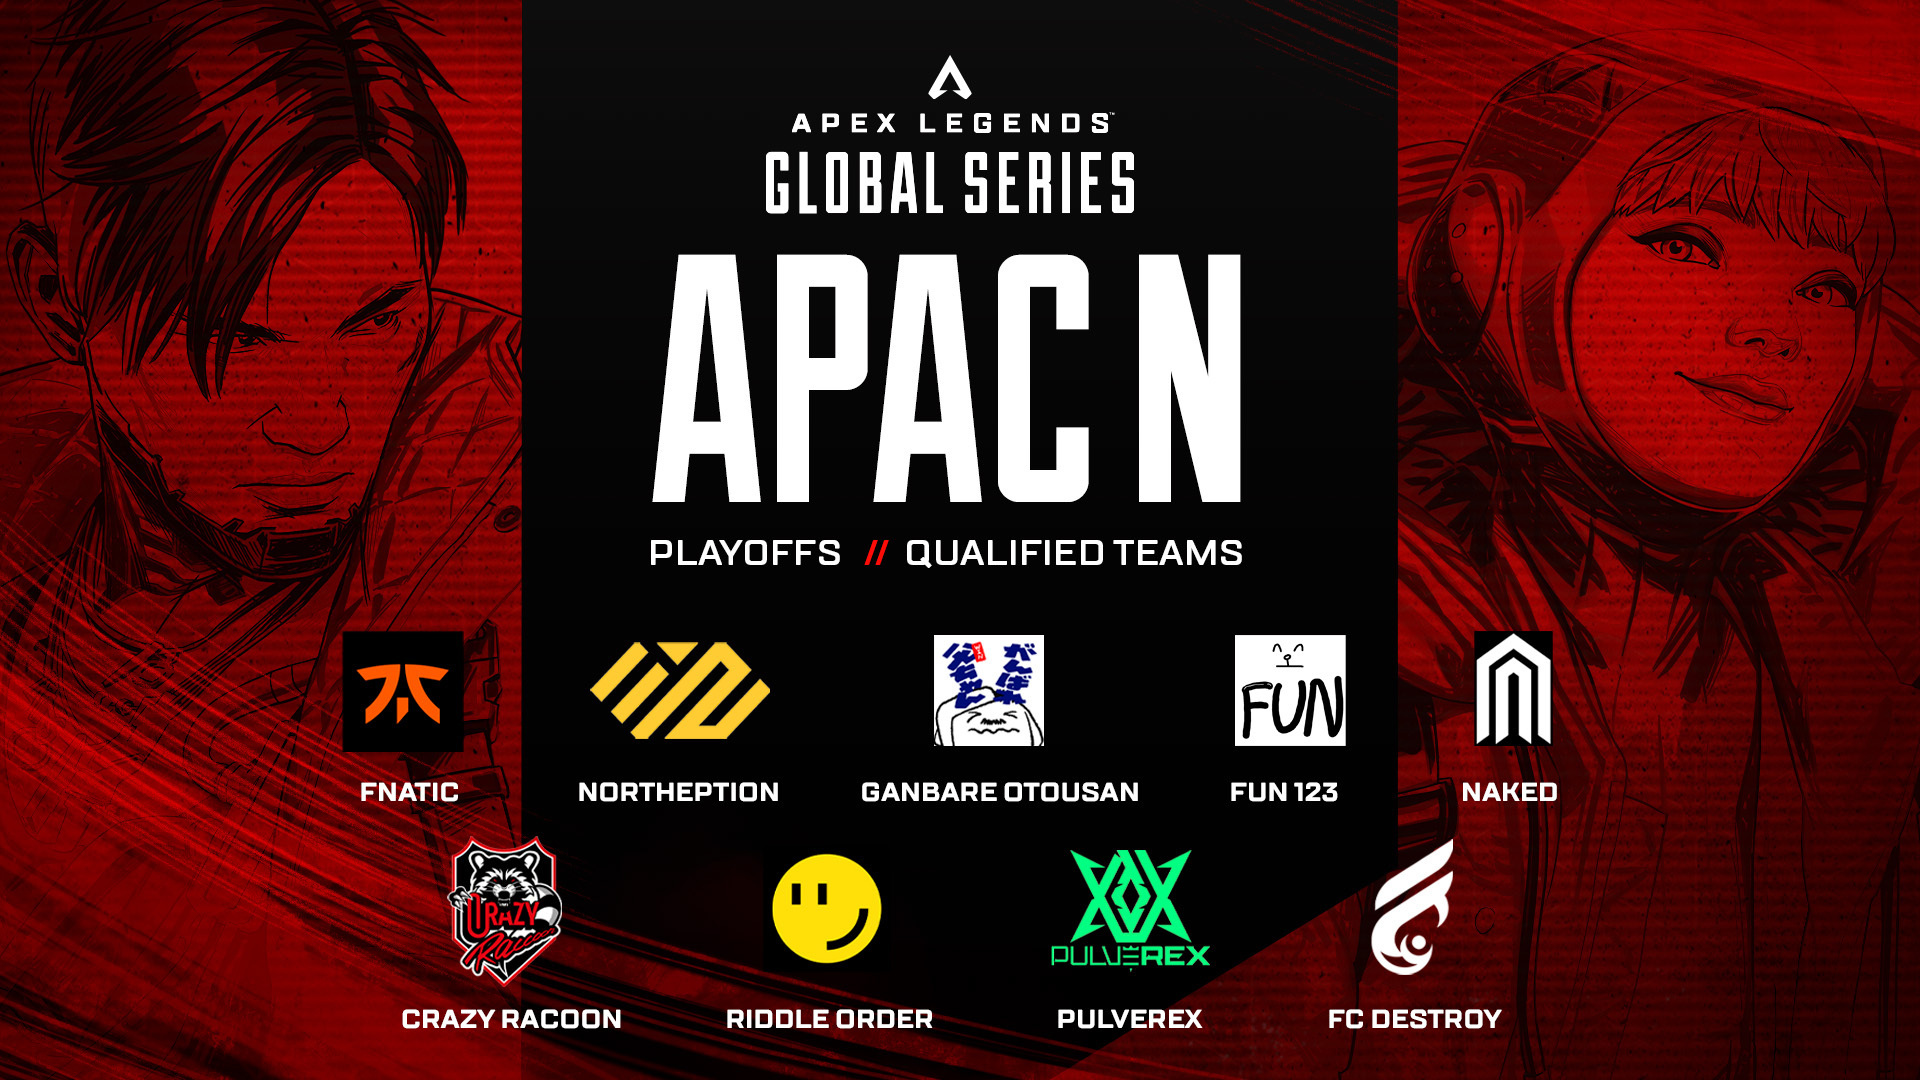 APAC North teams